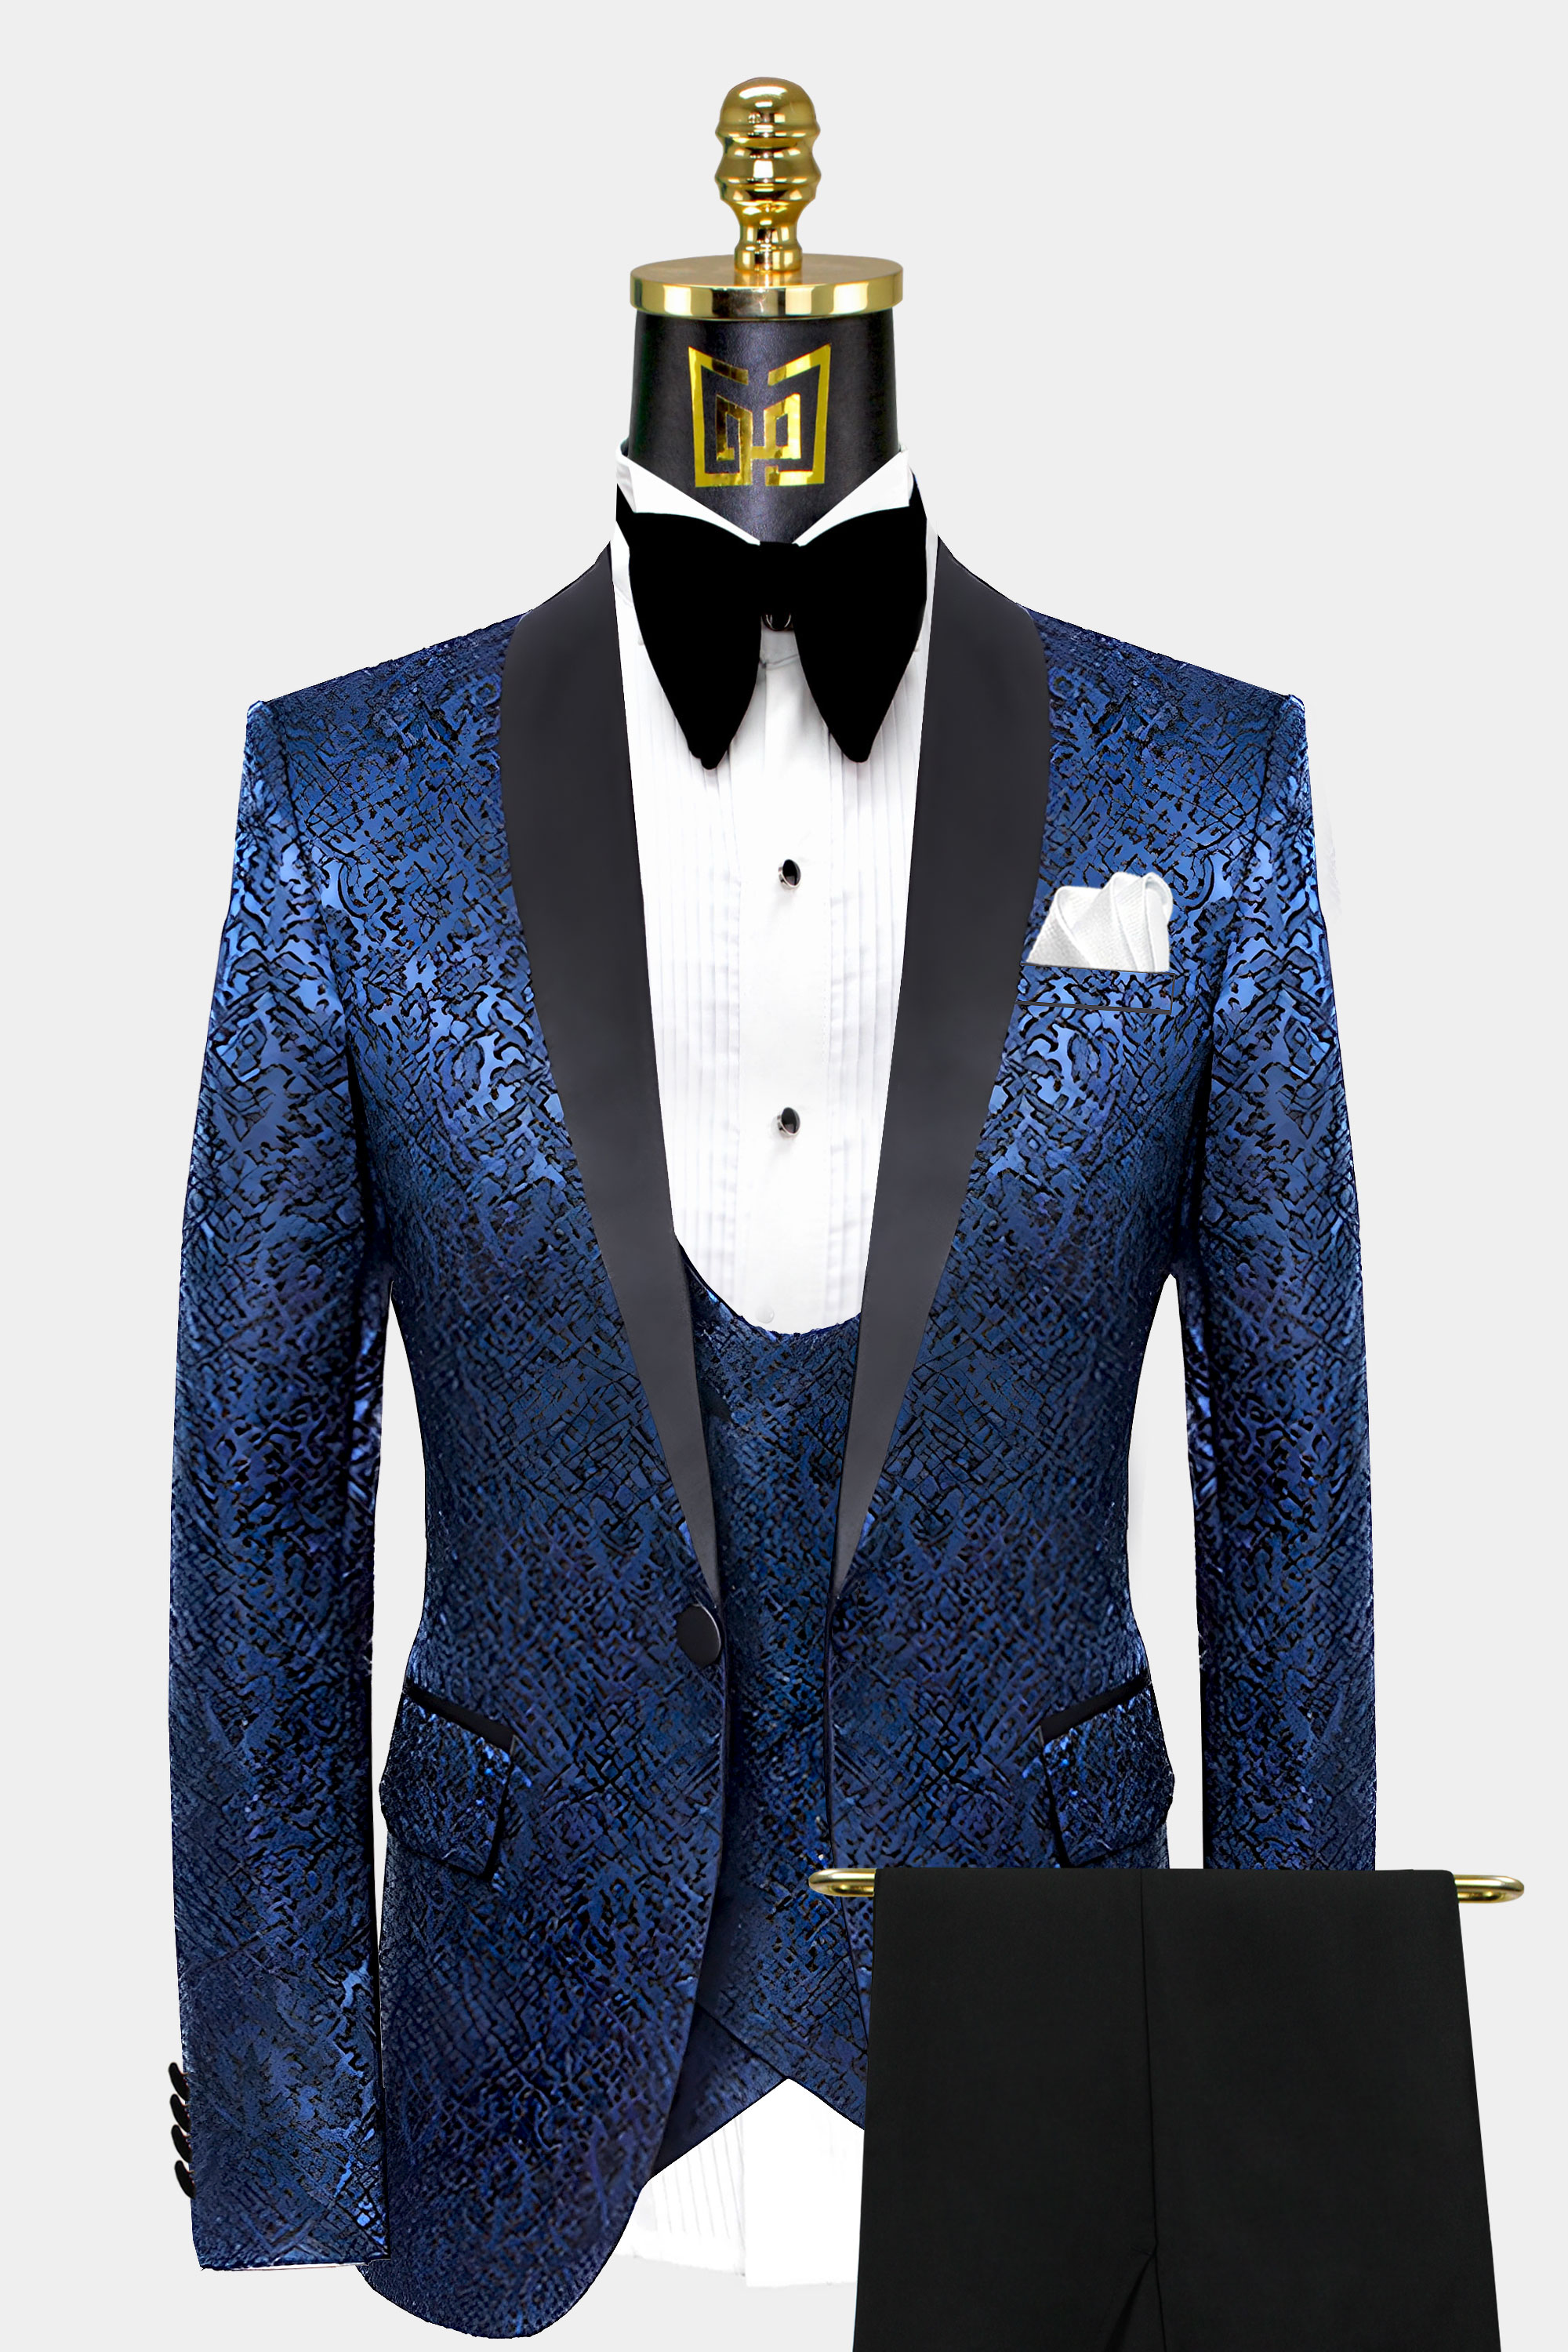 Blue On Black Suit | vlr.eng.br